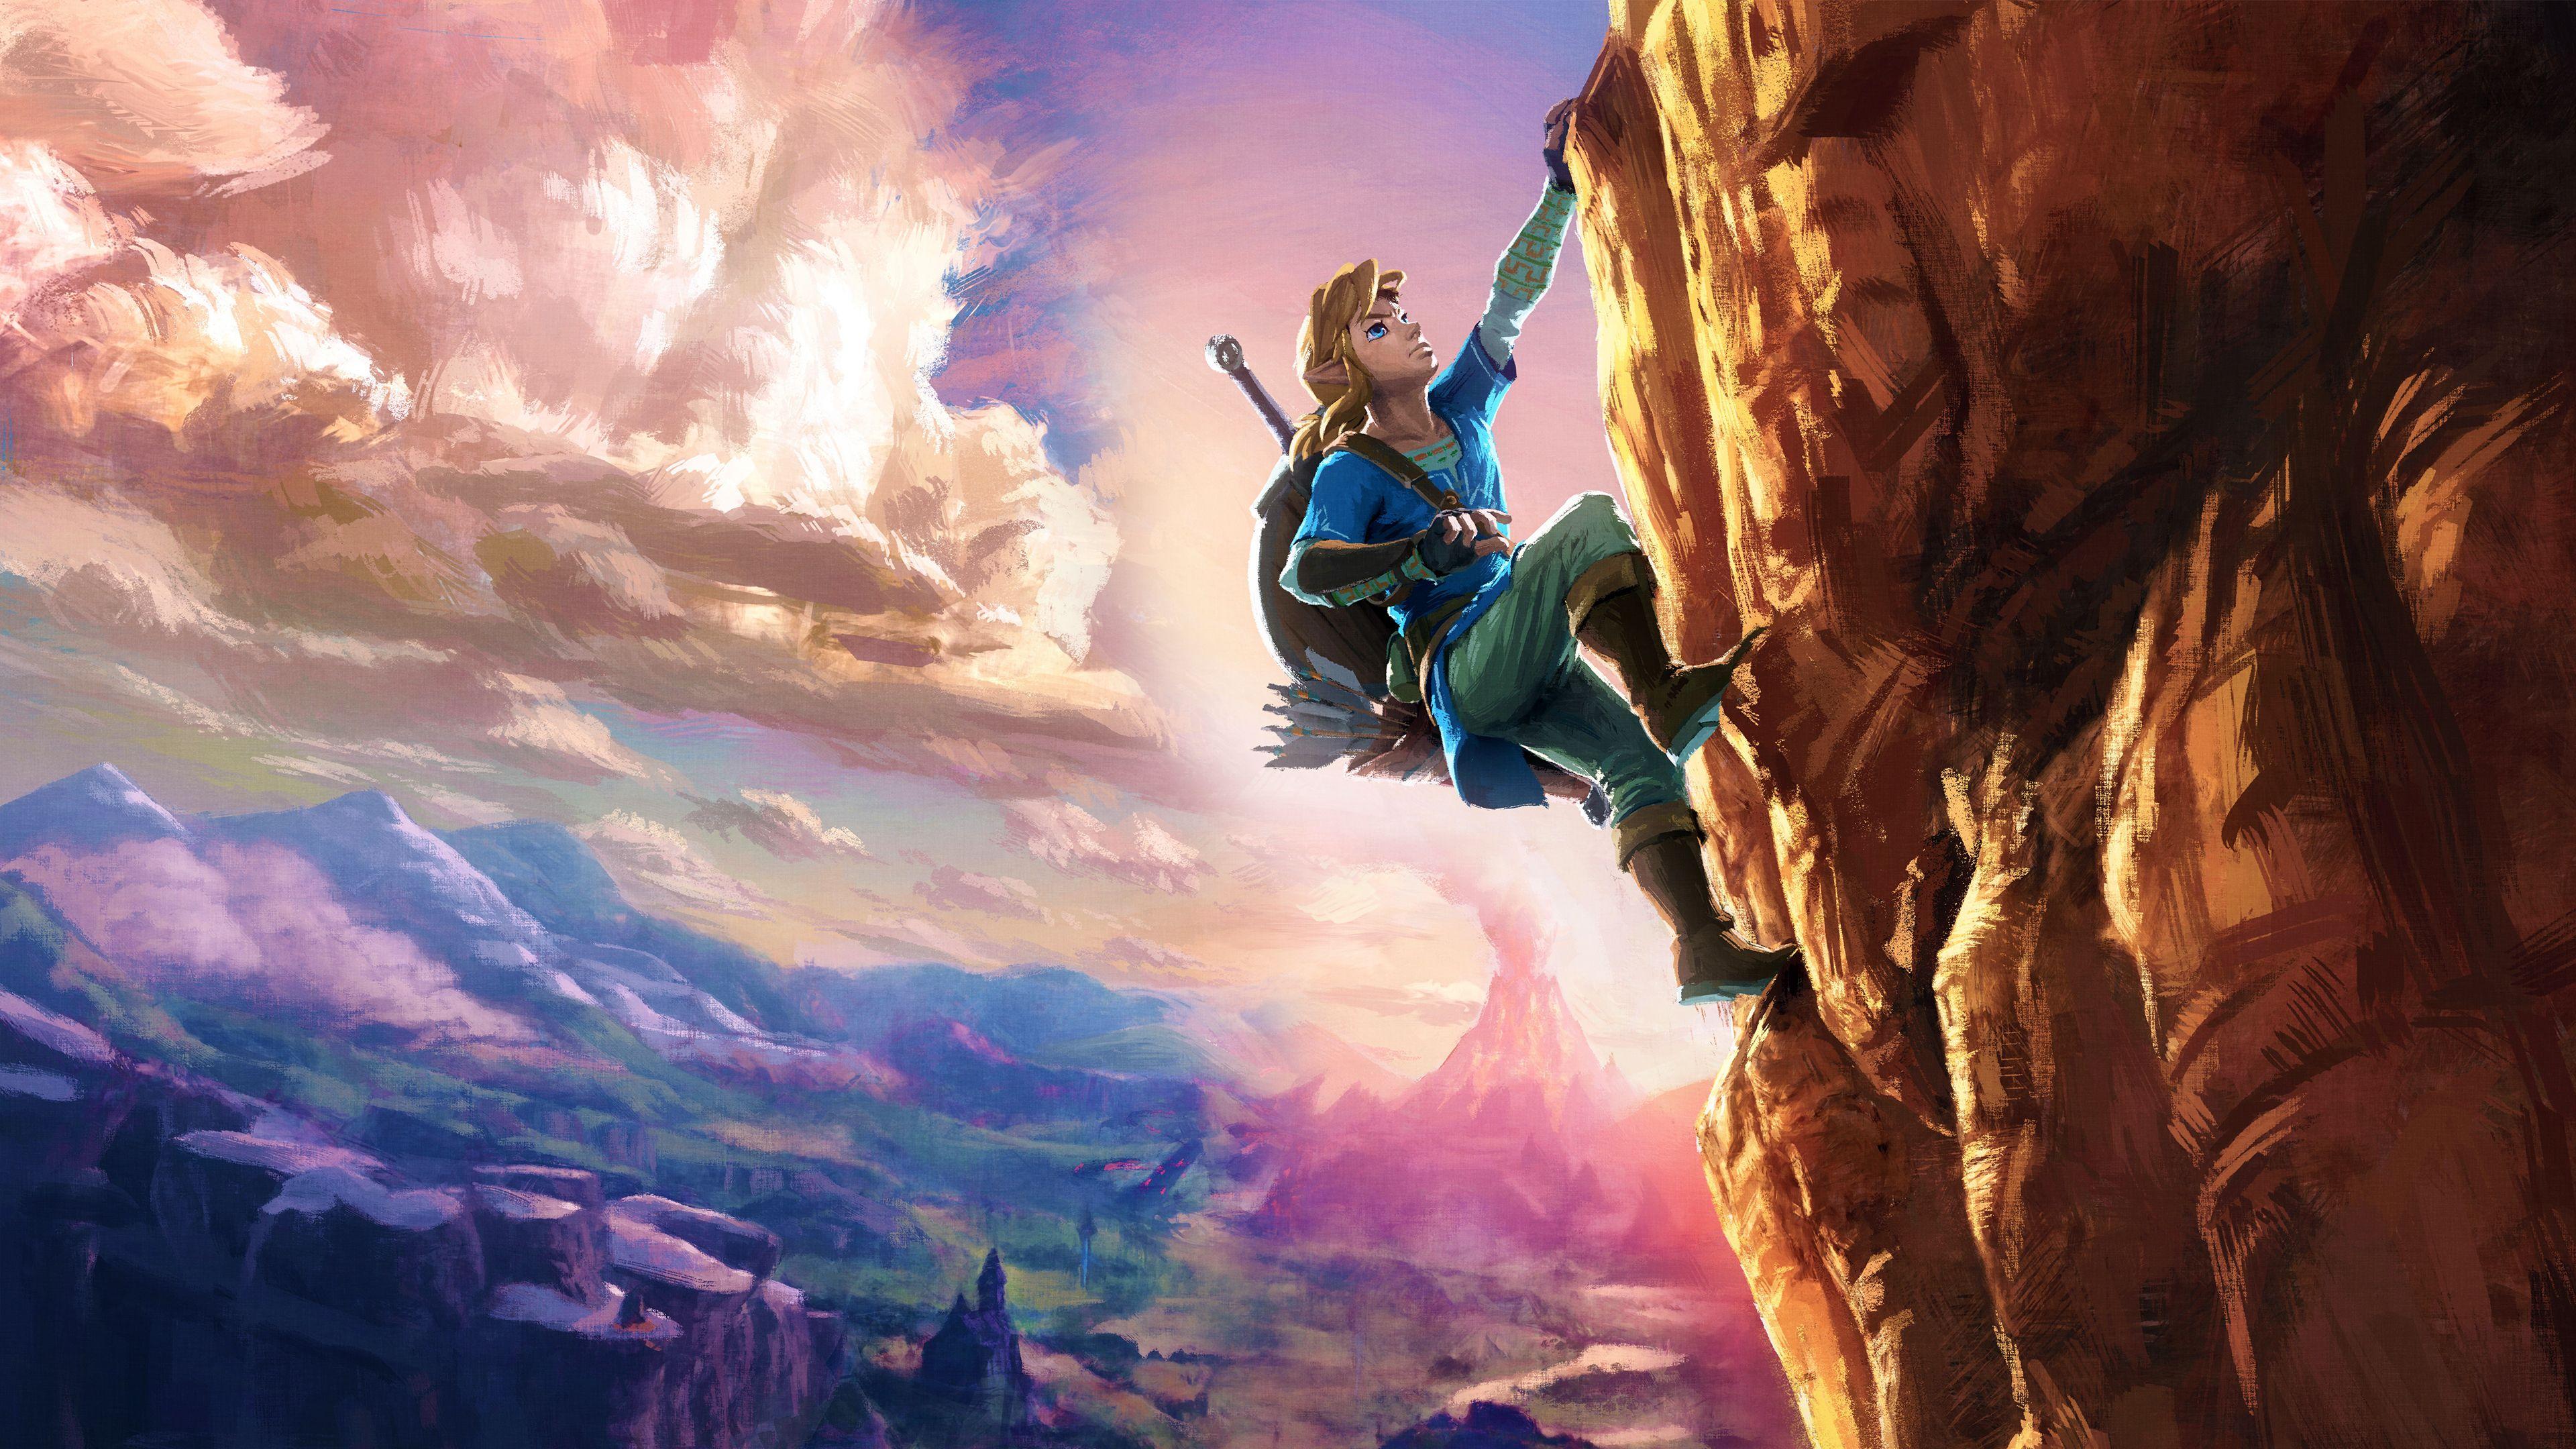 Zelda Breath of the Wild 4K Wallpapers - Top Free Zelda Breath of the